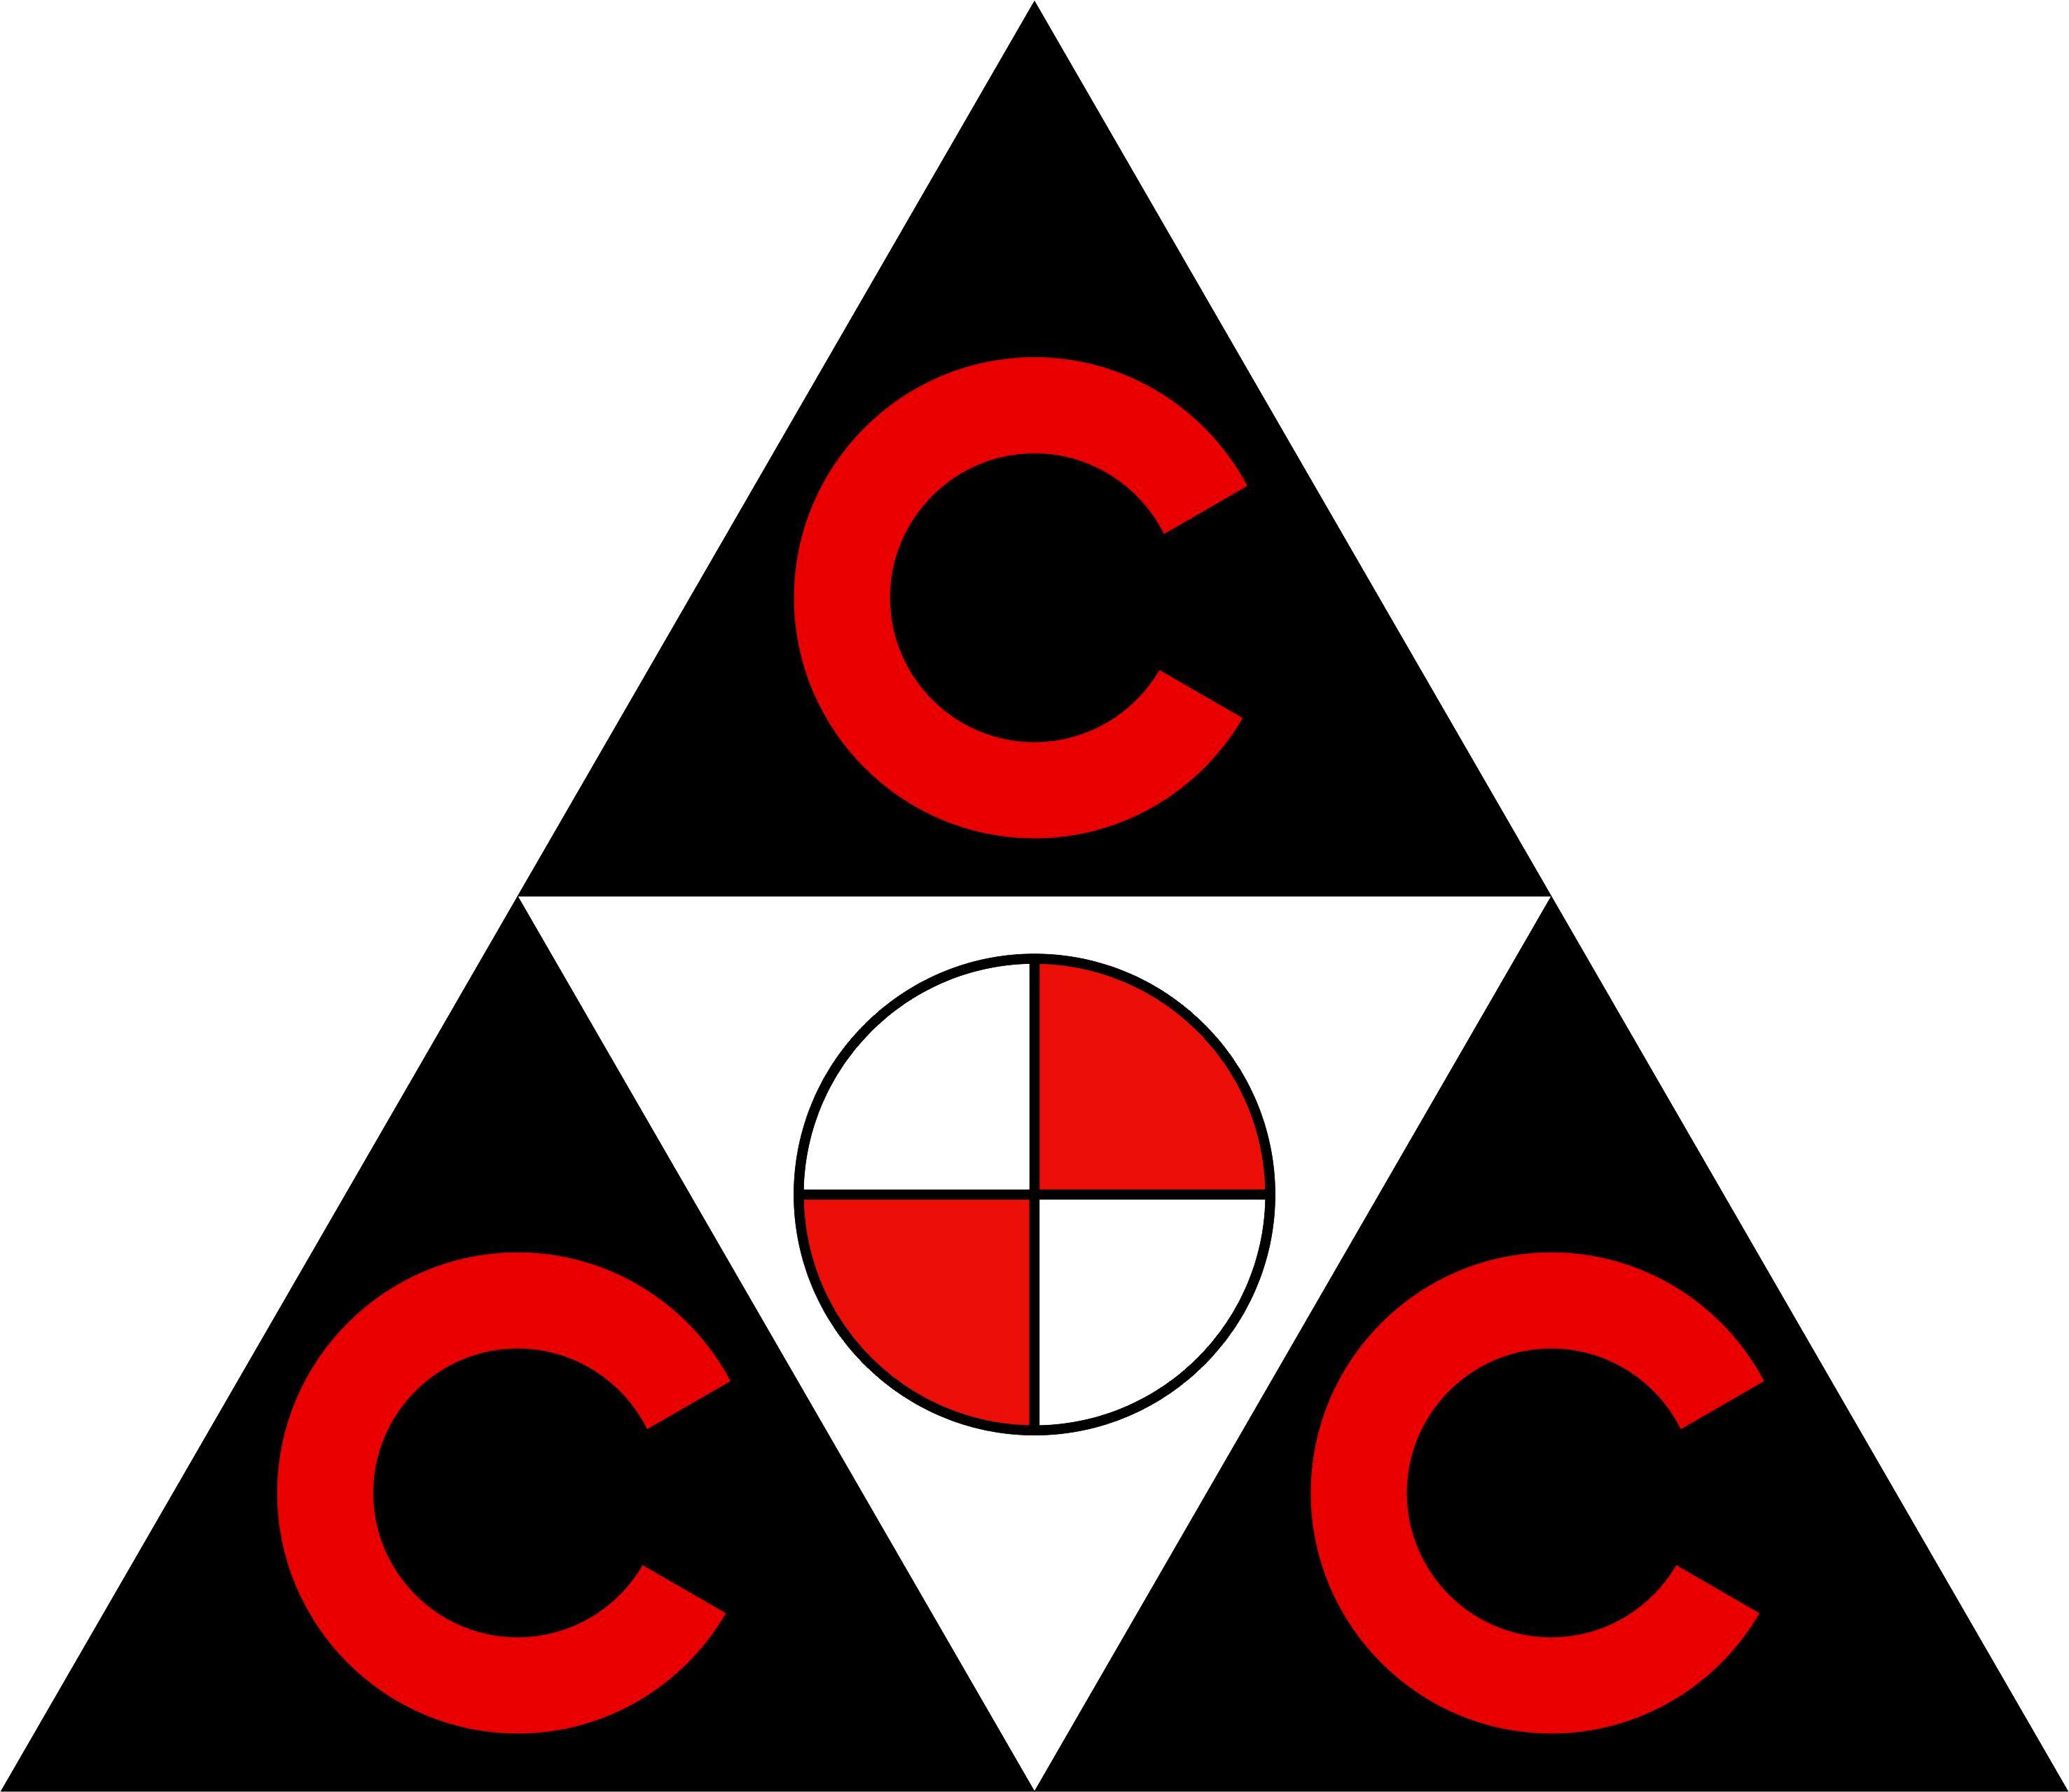 CCC Logo - CCC Logo (HigherRes)